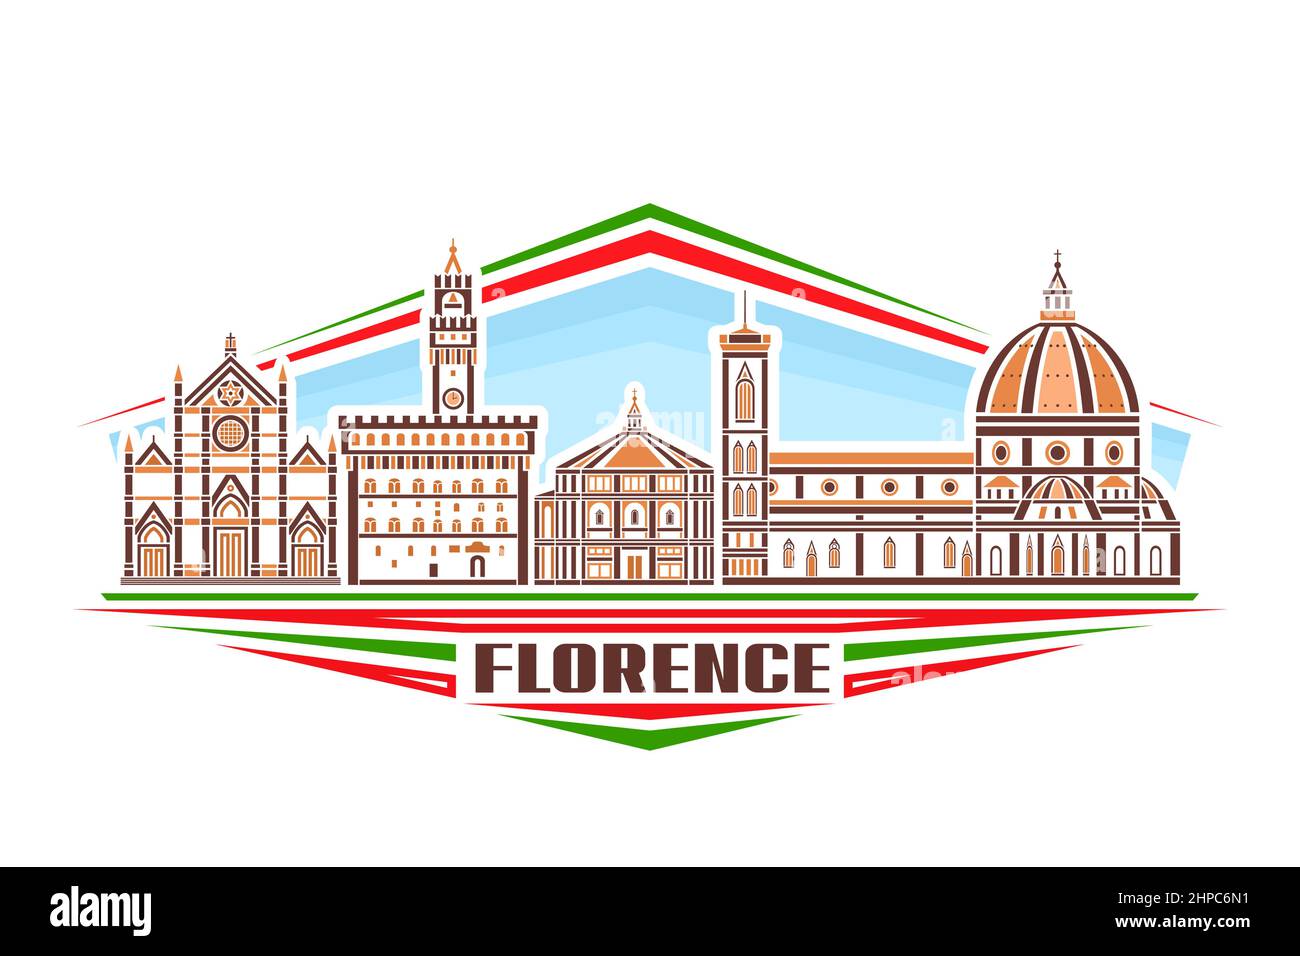 Illustrazione vettoriale di Firenze, segno orizzontale con disegno lineare famoso paesaggio cittadino di firenze su sfondo cielo di giorno, concetto di arte urbana europea Illustrazione Vettoriale